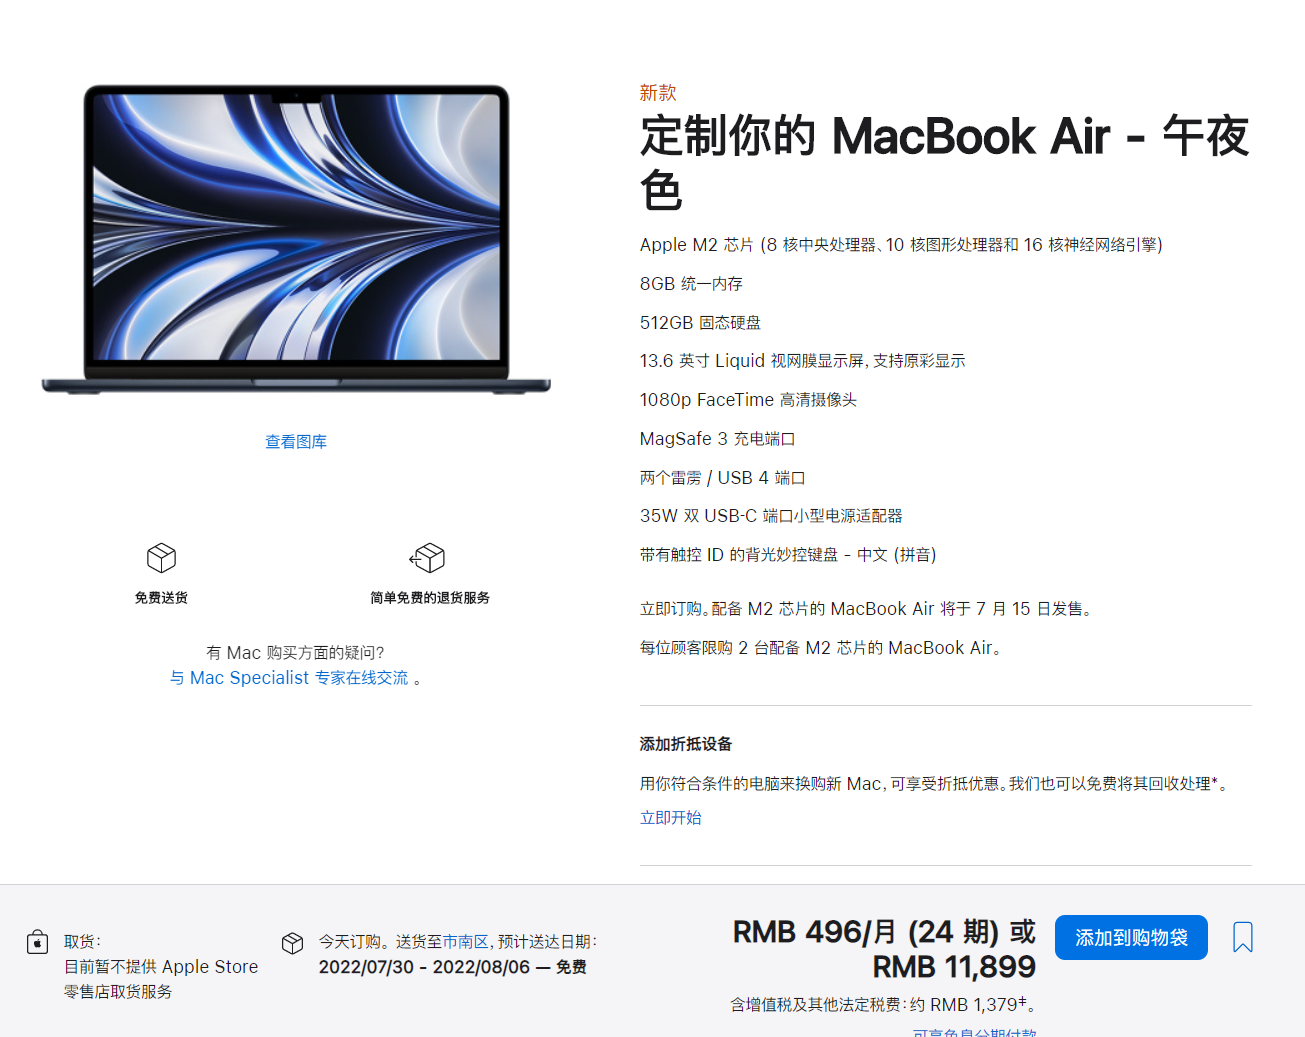 基准测试表明 M2 芯片版 MacBook Air 的 256GB SSD 速度较慢，苹果官方回应“实际性能甚至更快”